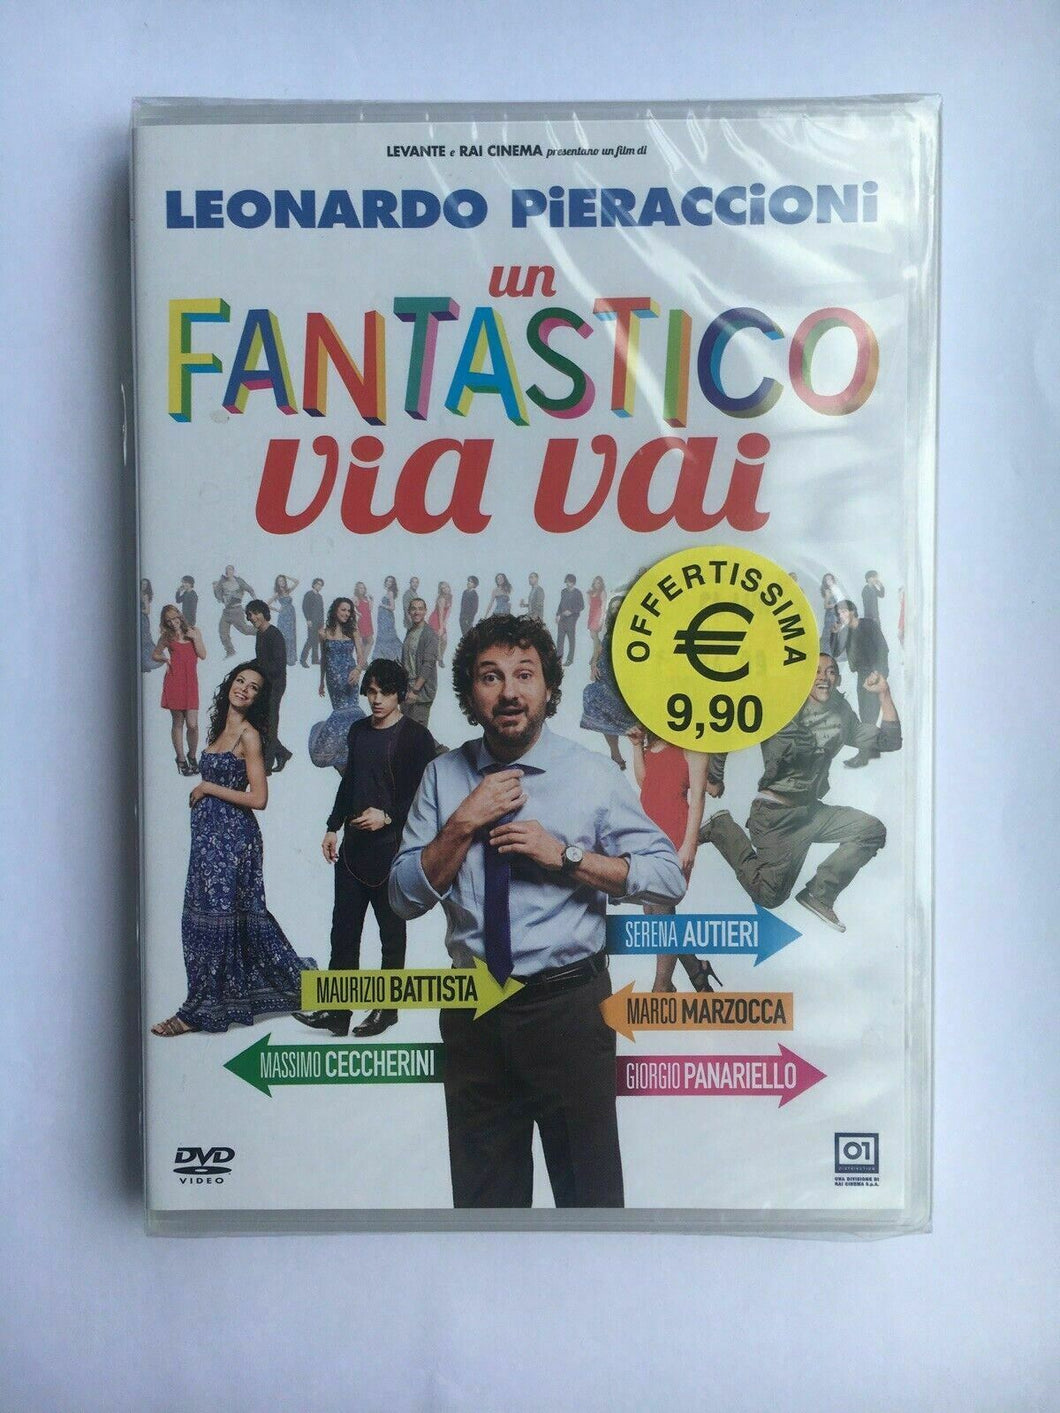 UN FANTASTICO VIA VAI - Leonardo Pieraccioni -2014- 01 DISTRIBUTION - DVD [dv01]